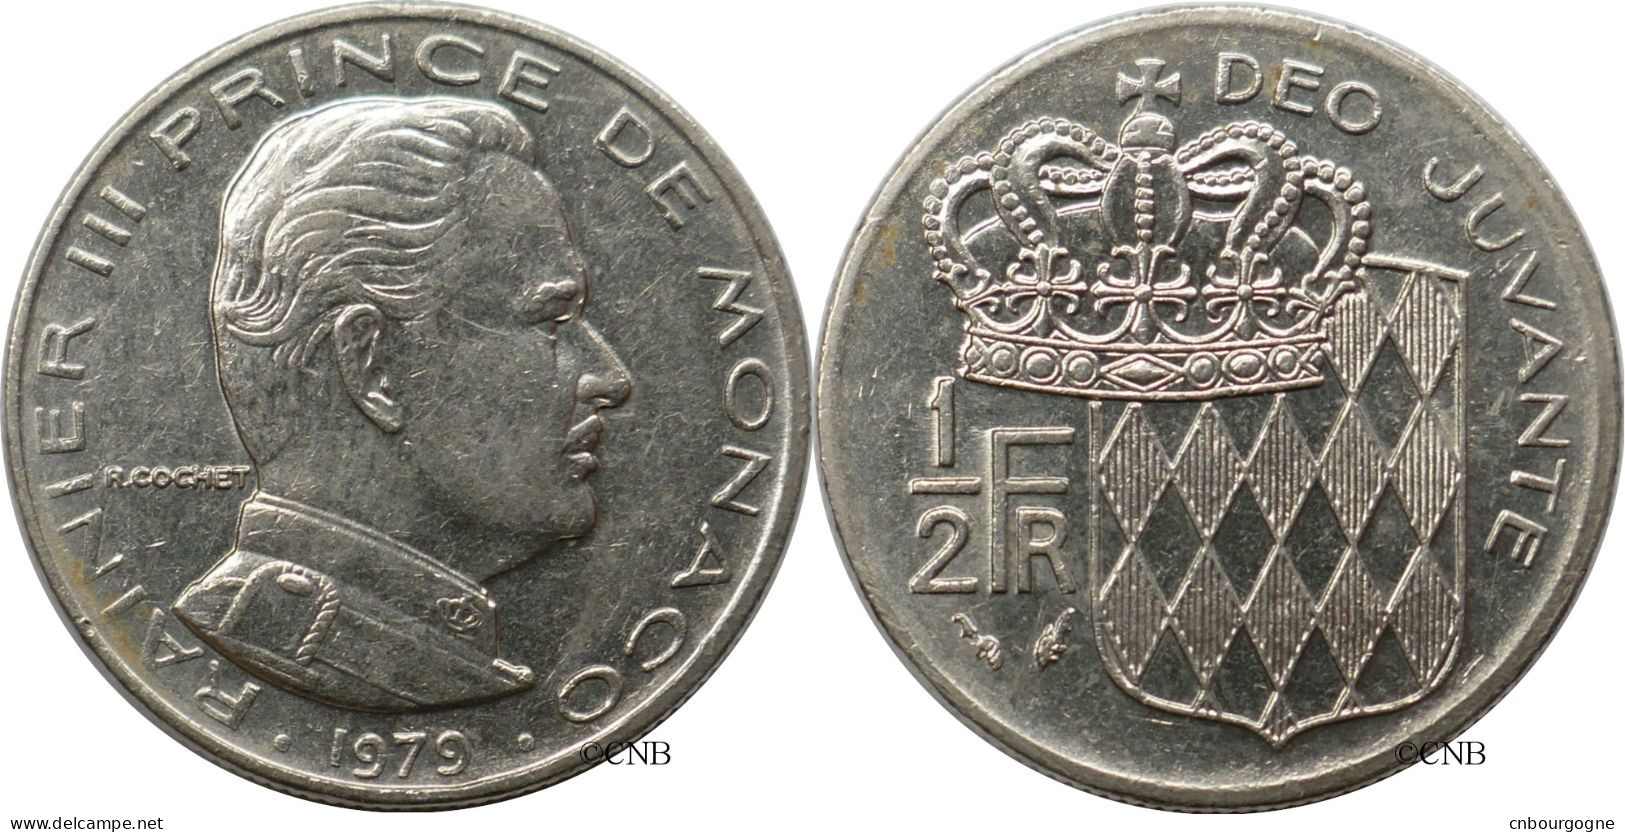 Monaco - Principauté - Rainier III - 1/2 Franc 1979 - TTB+/AU50 - Mon6611 - 1960-2001 Nouveaux Francs